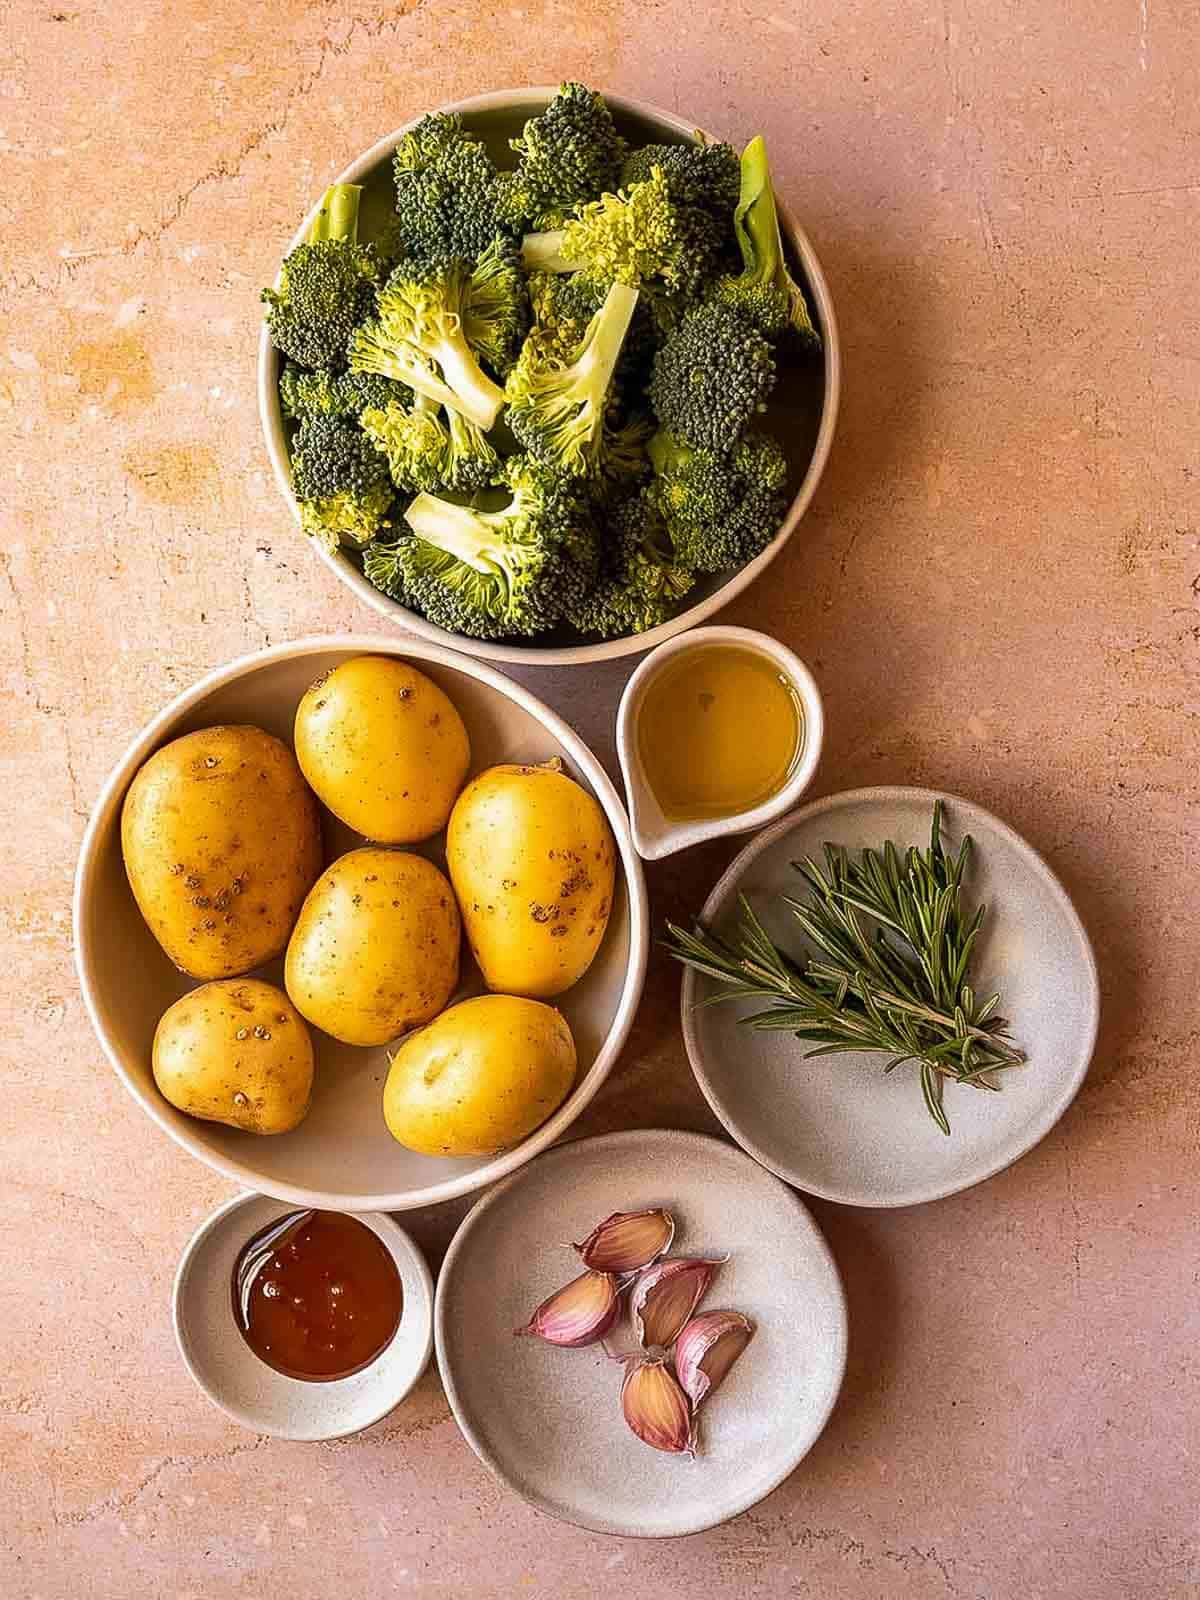 ingredientes para patatas asadas al horno con brócoli.